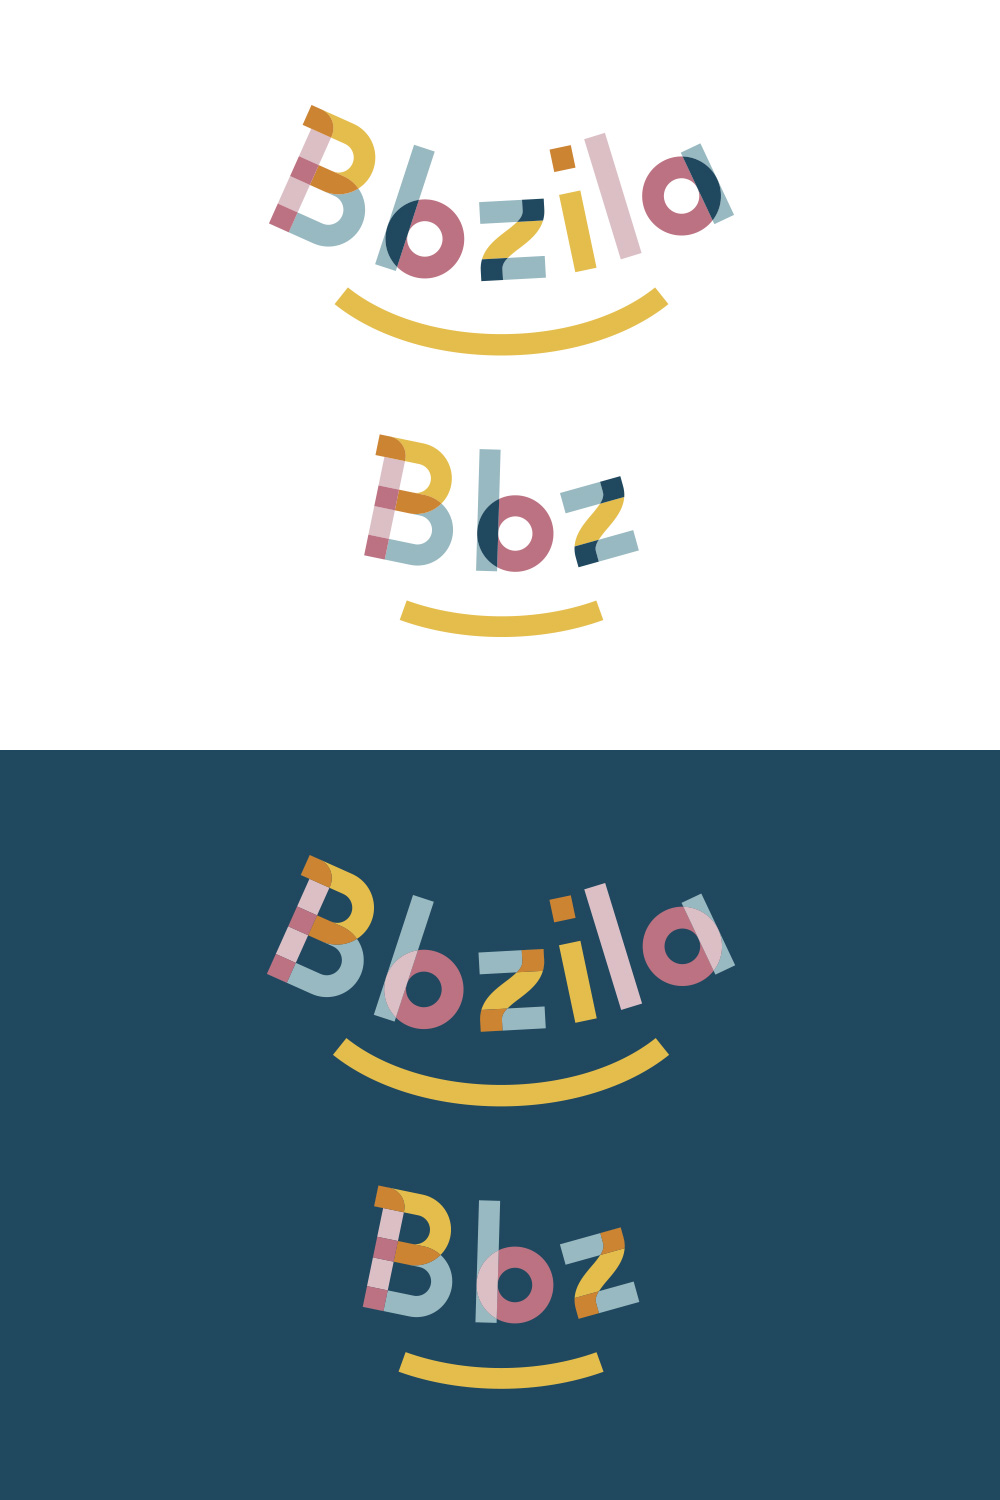 Déclinaisons du logo Bbzila accessoires bébé écoresponsables